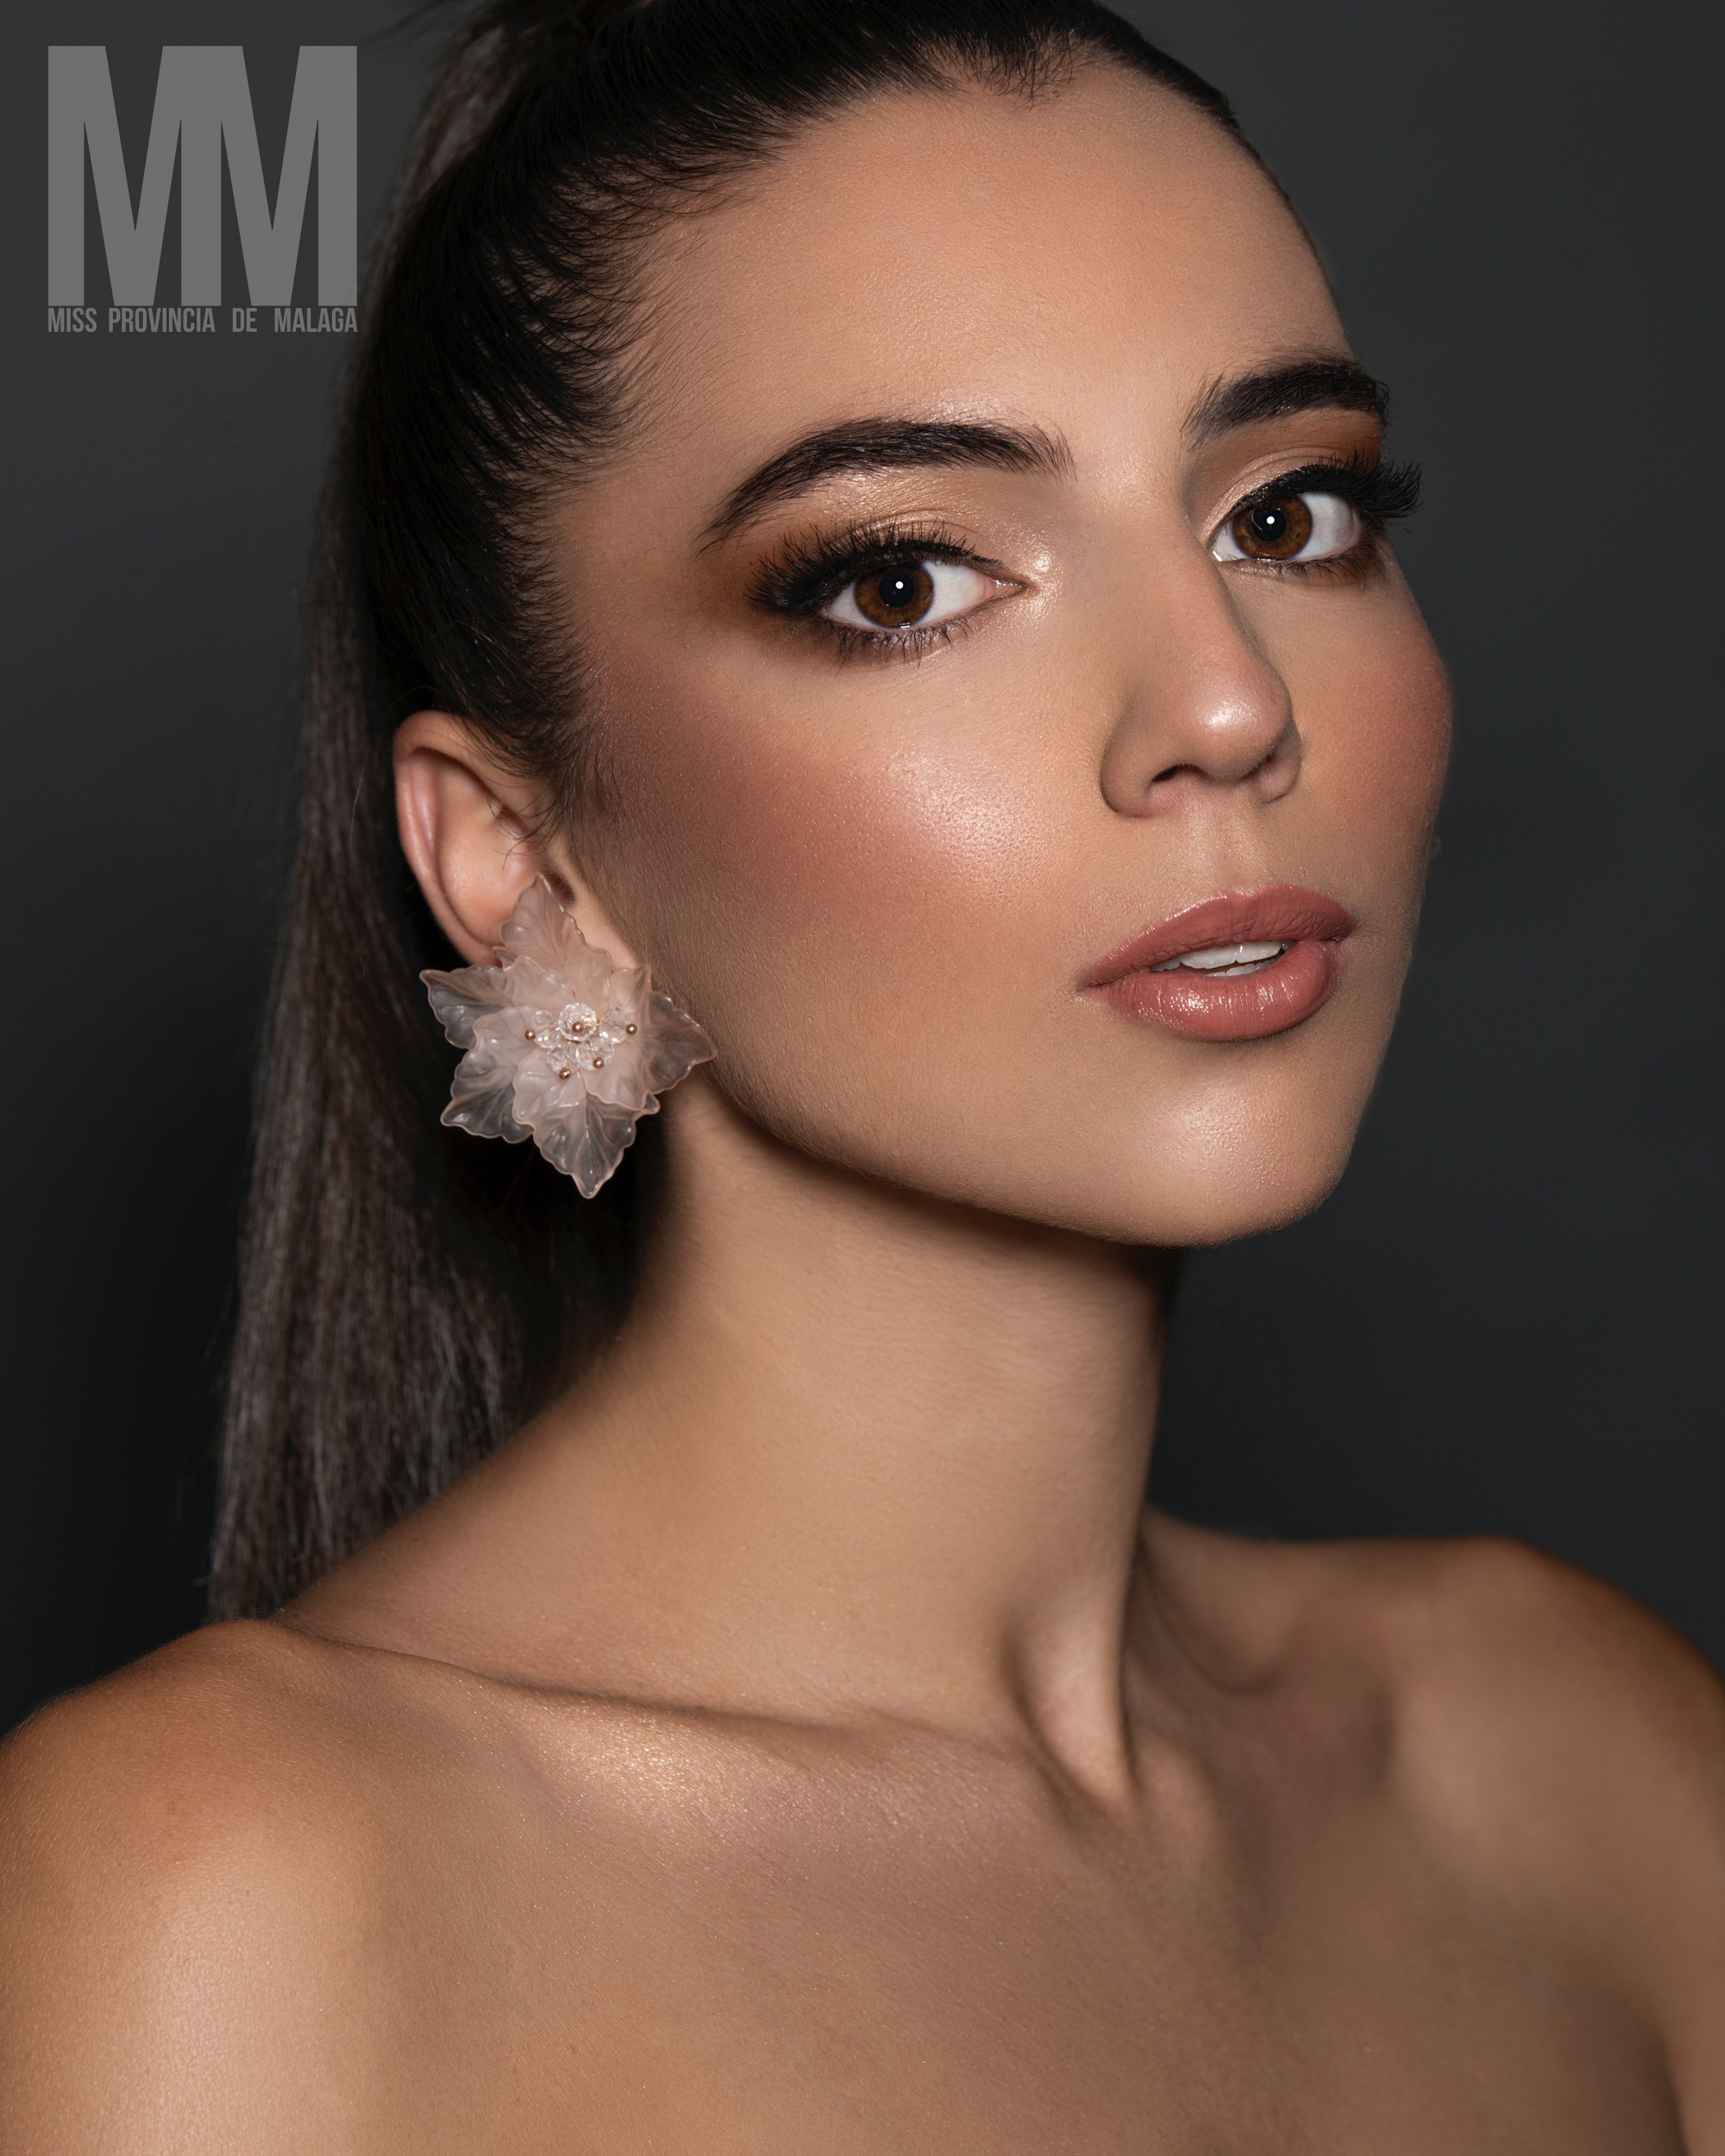 Miss Provincia de Malaga 2022 MISS ALHAURIN EL GRANDE Alba Hidalgo 1